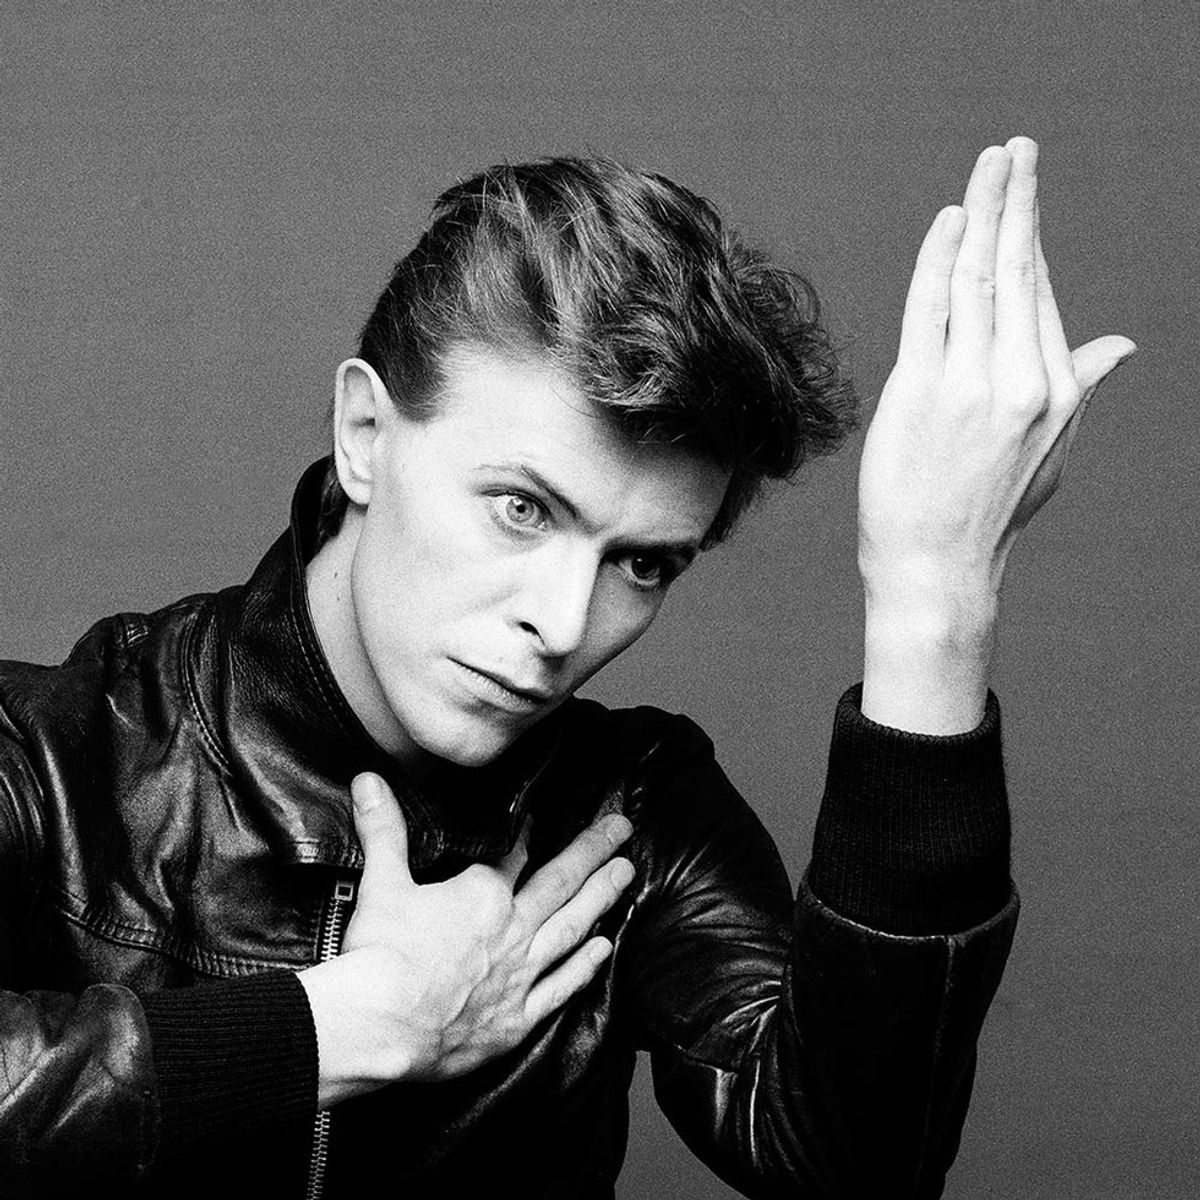 My David Bowie